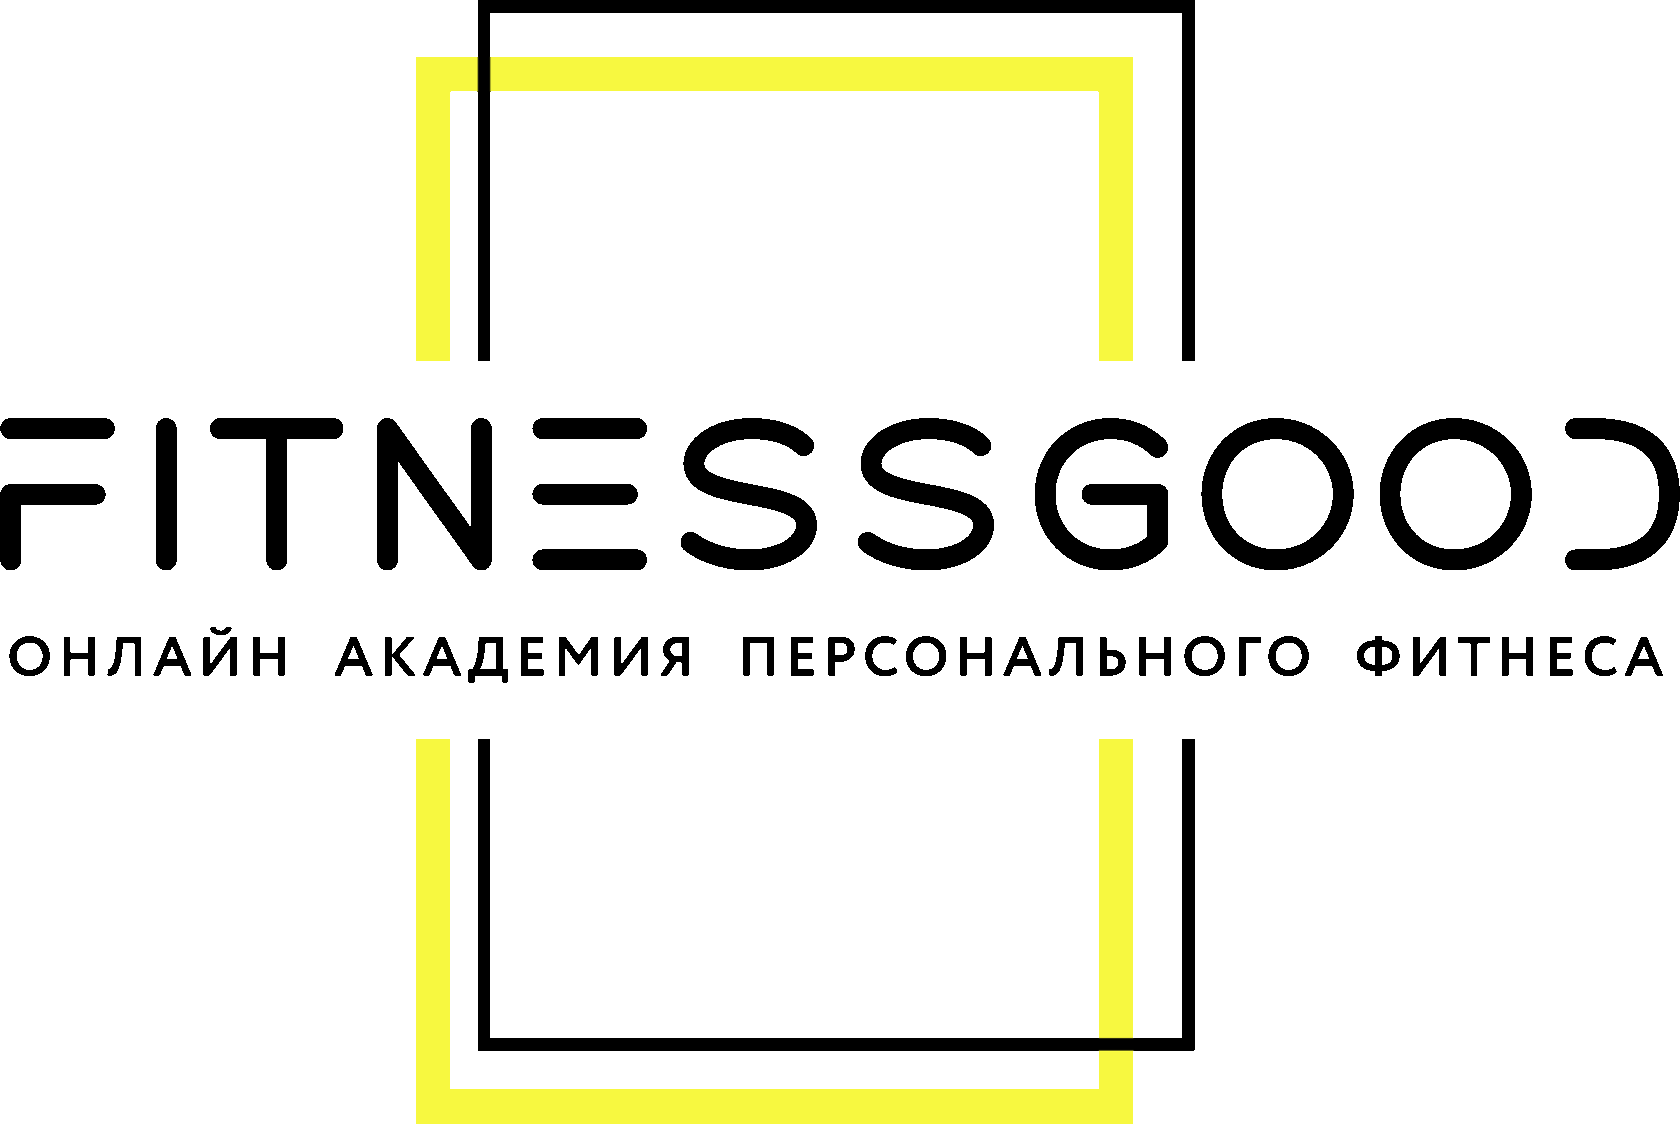  FitnessGood онлайн академия персонального фитнеса с 2018 года 